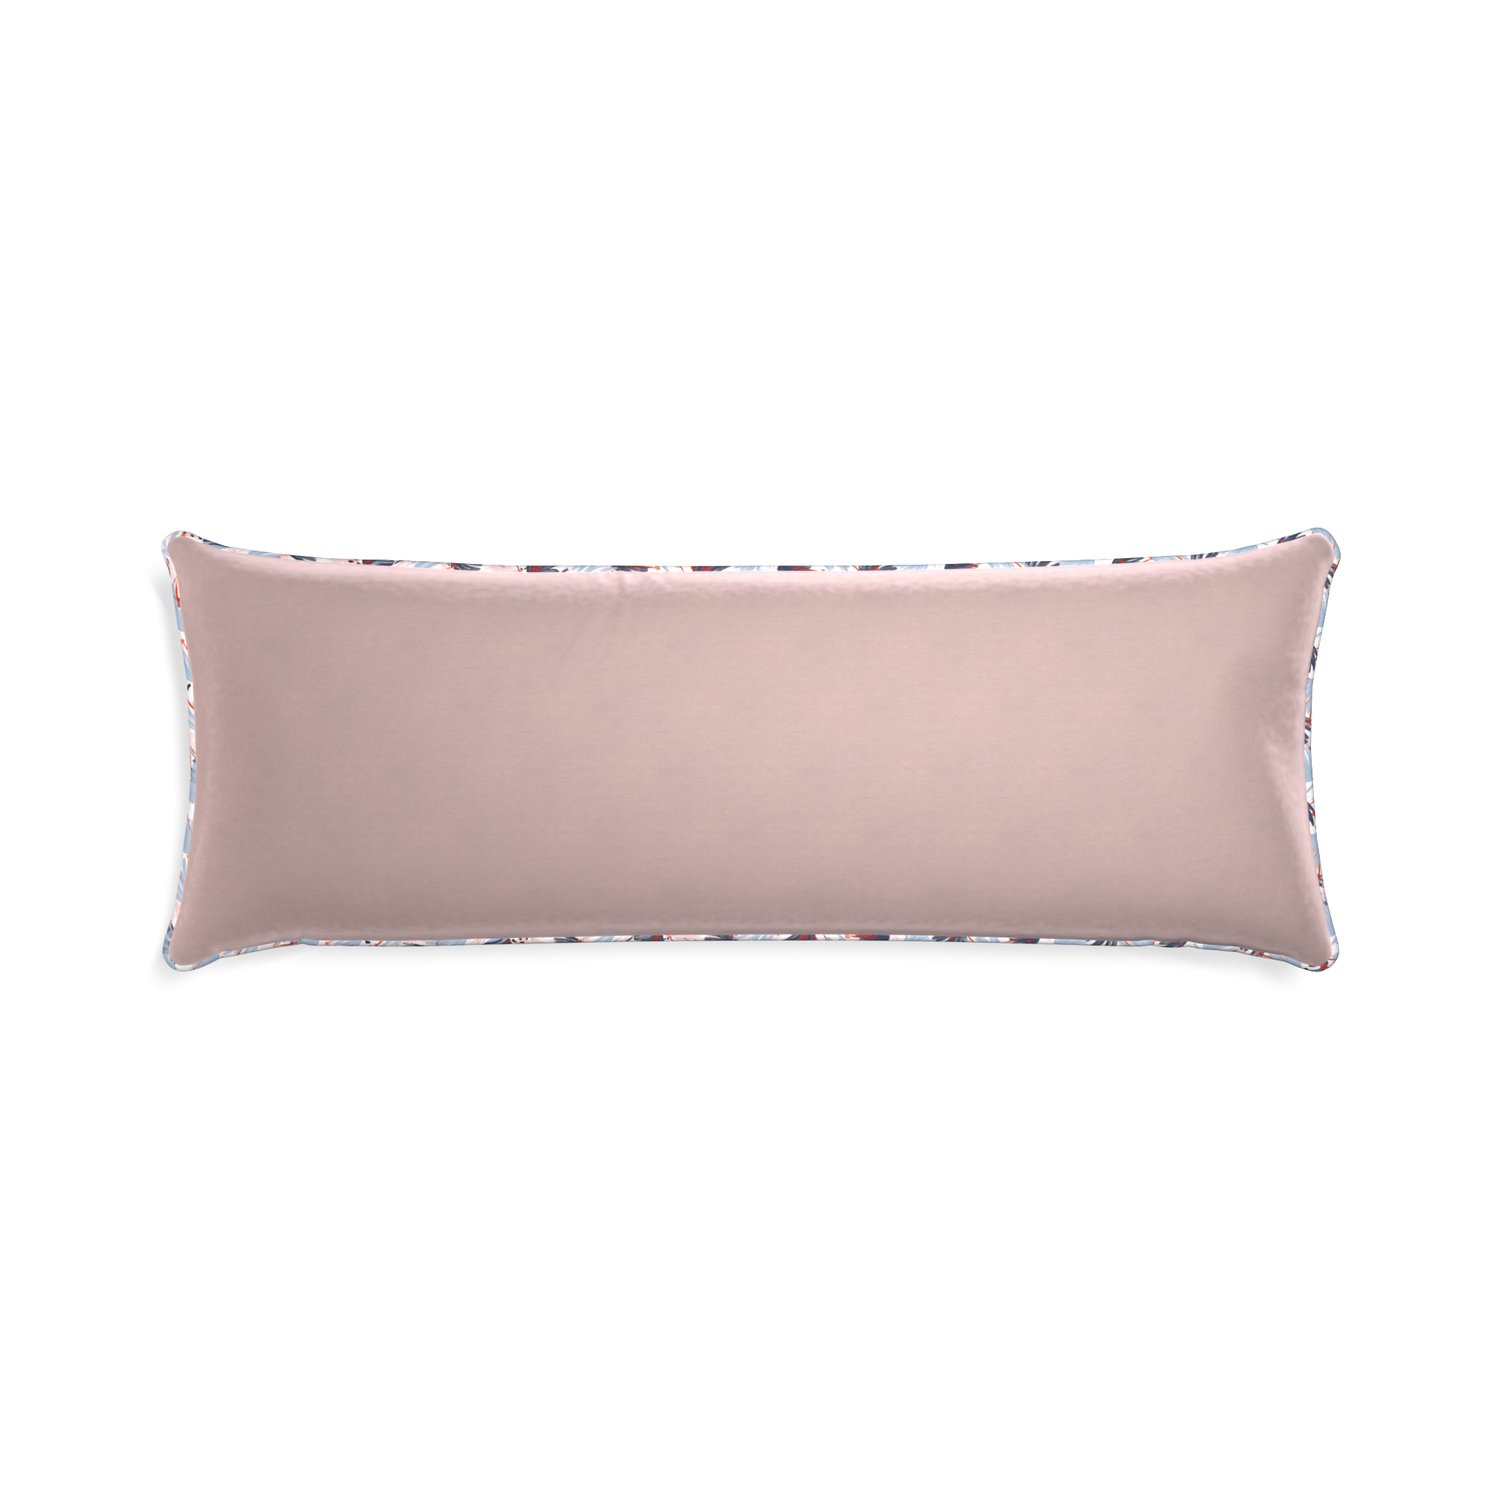 Xl-lumbar rose velvet custom pillow with e piping on white background